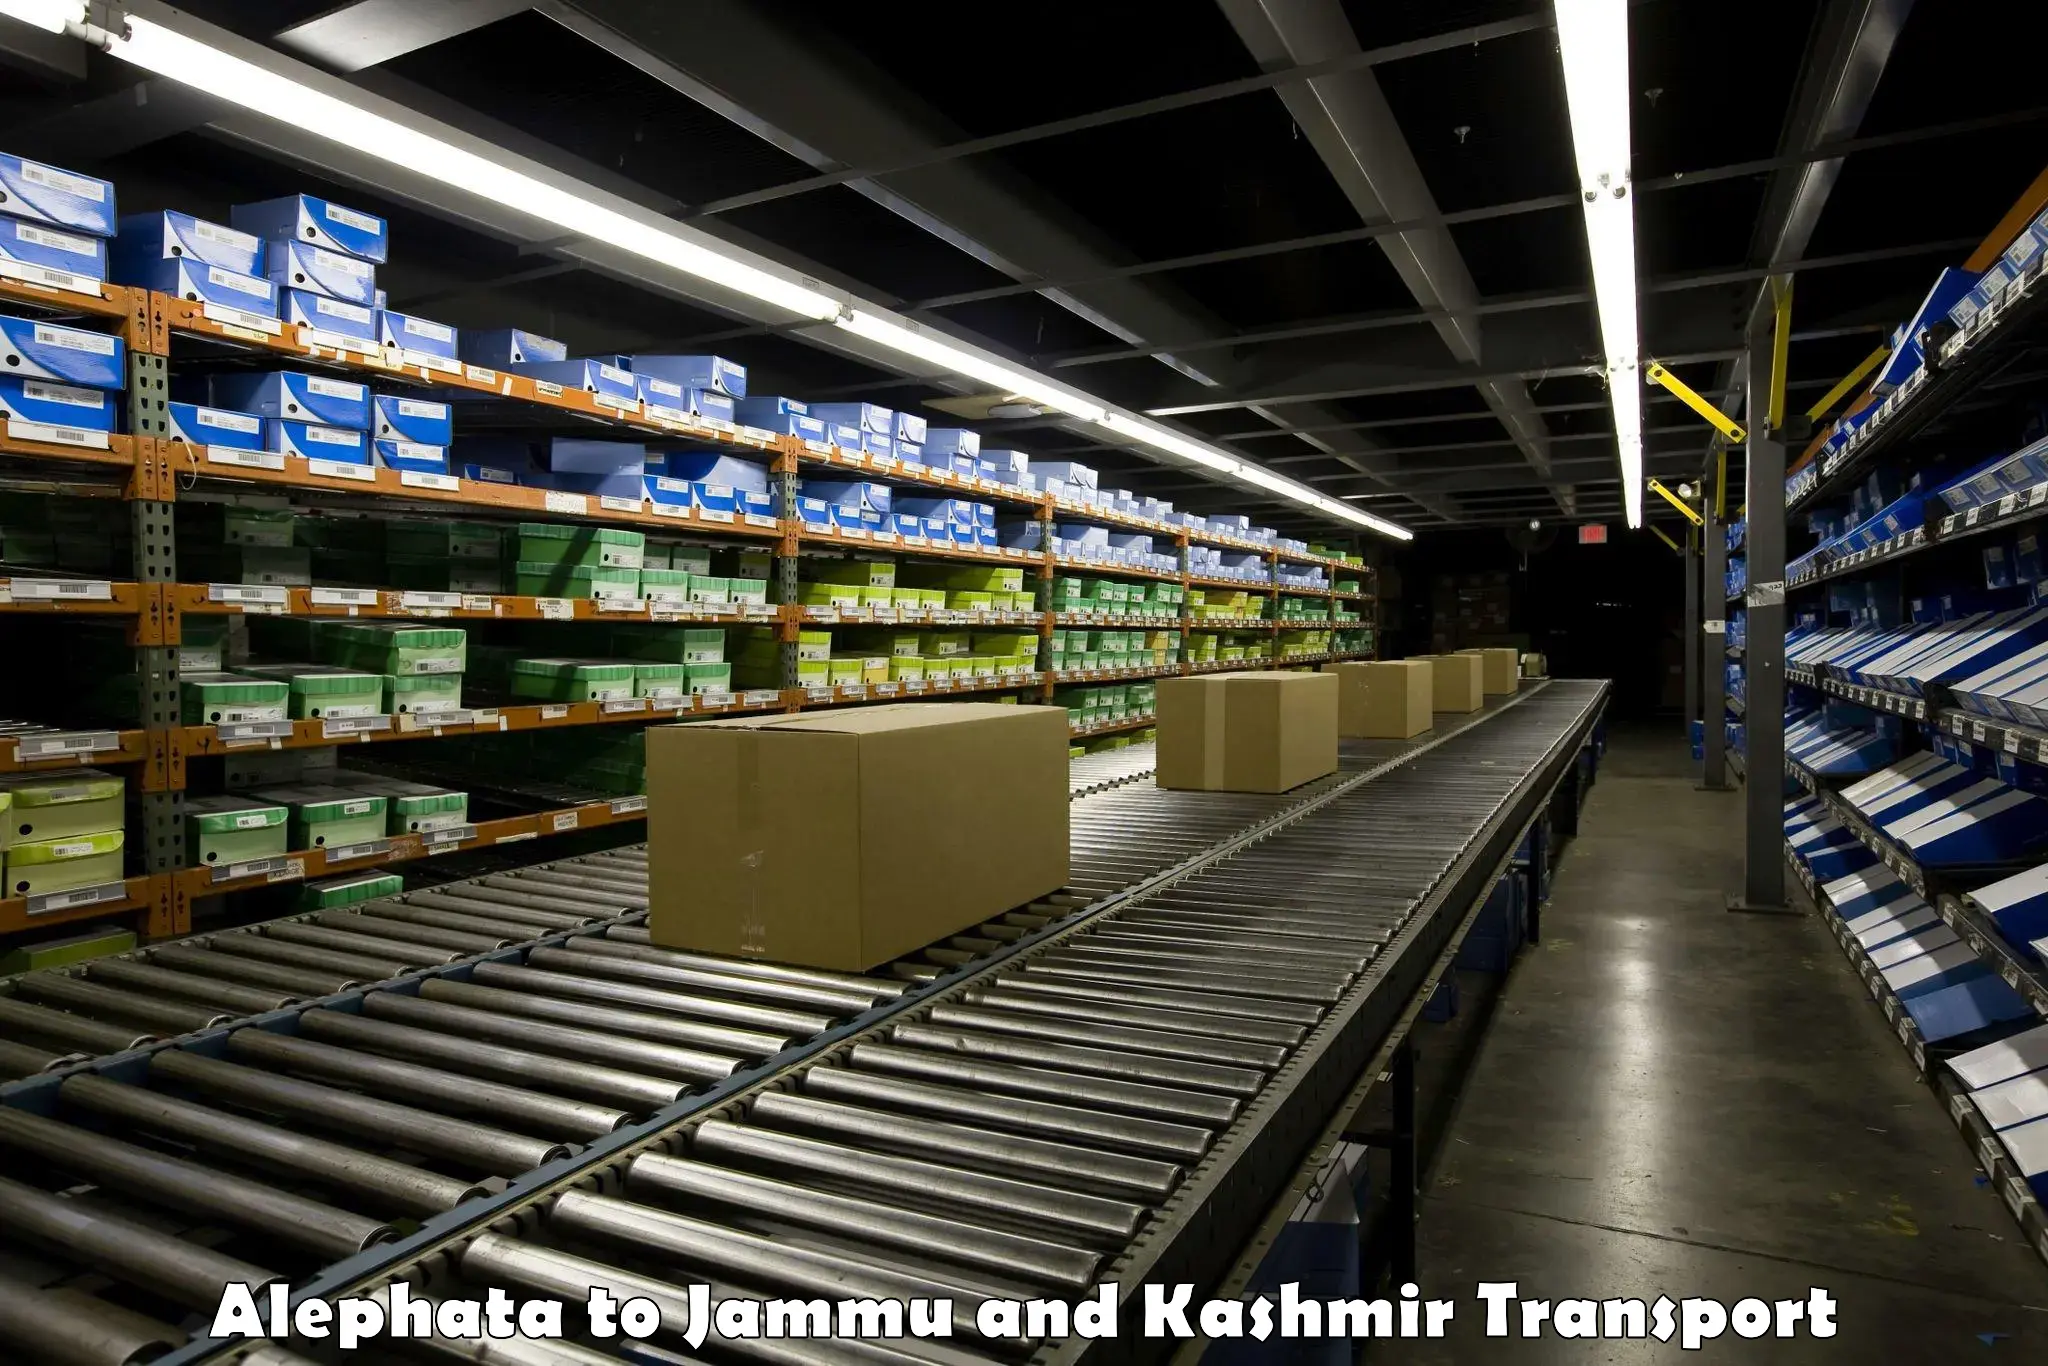 Daily parcel service transport Alephata to University of Jammu